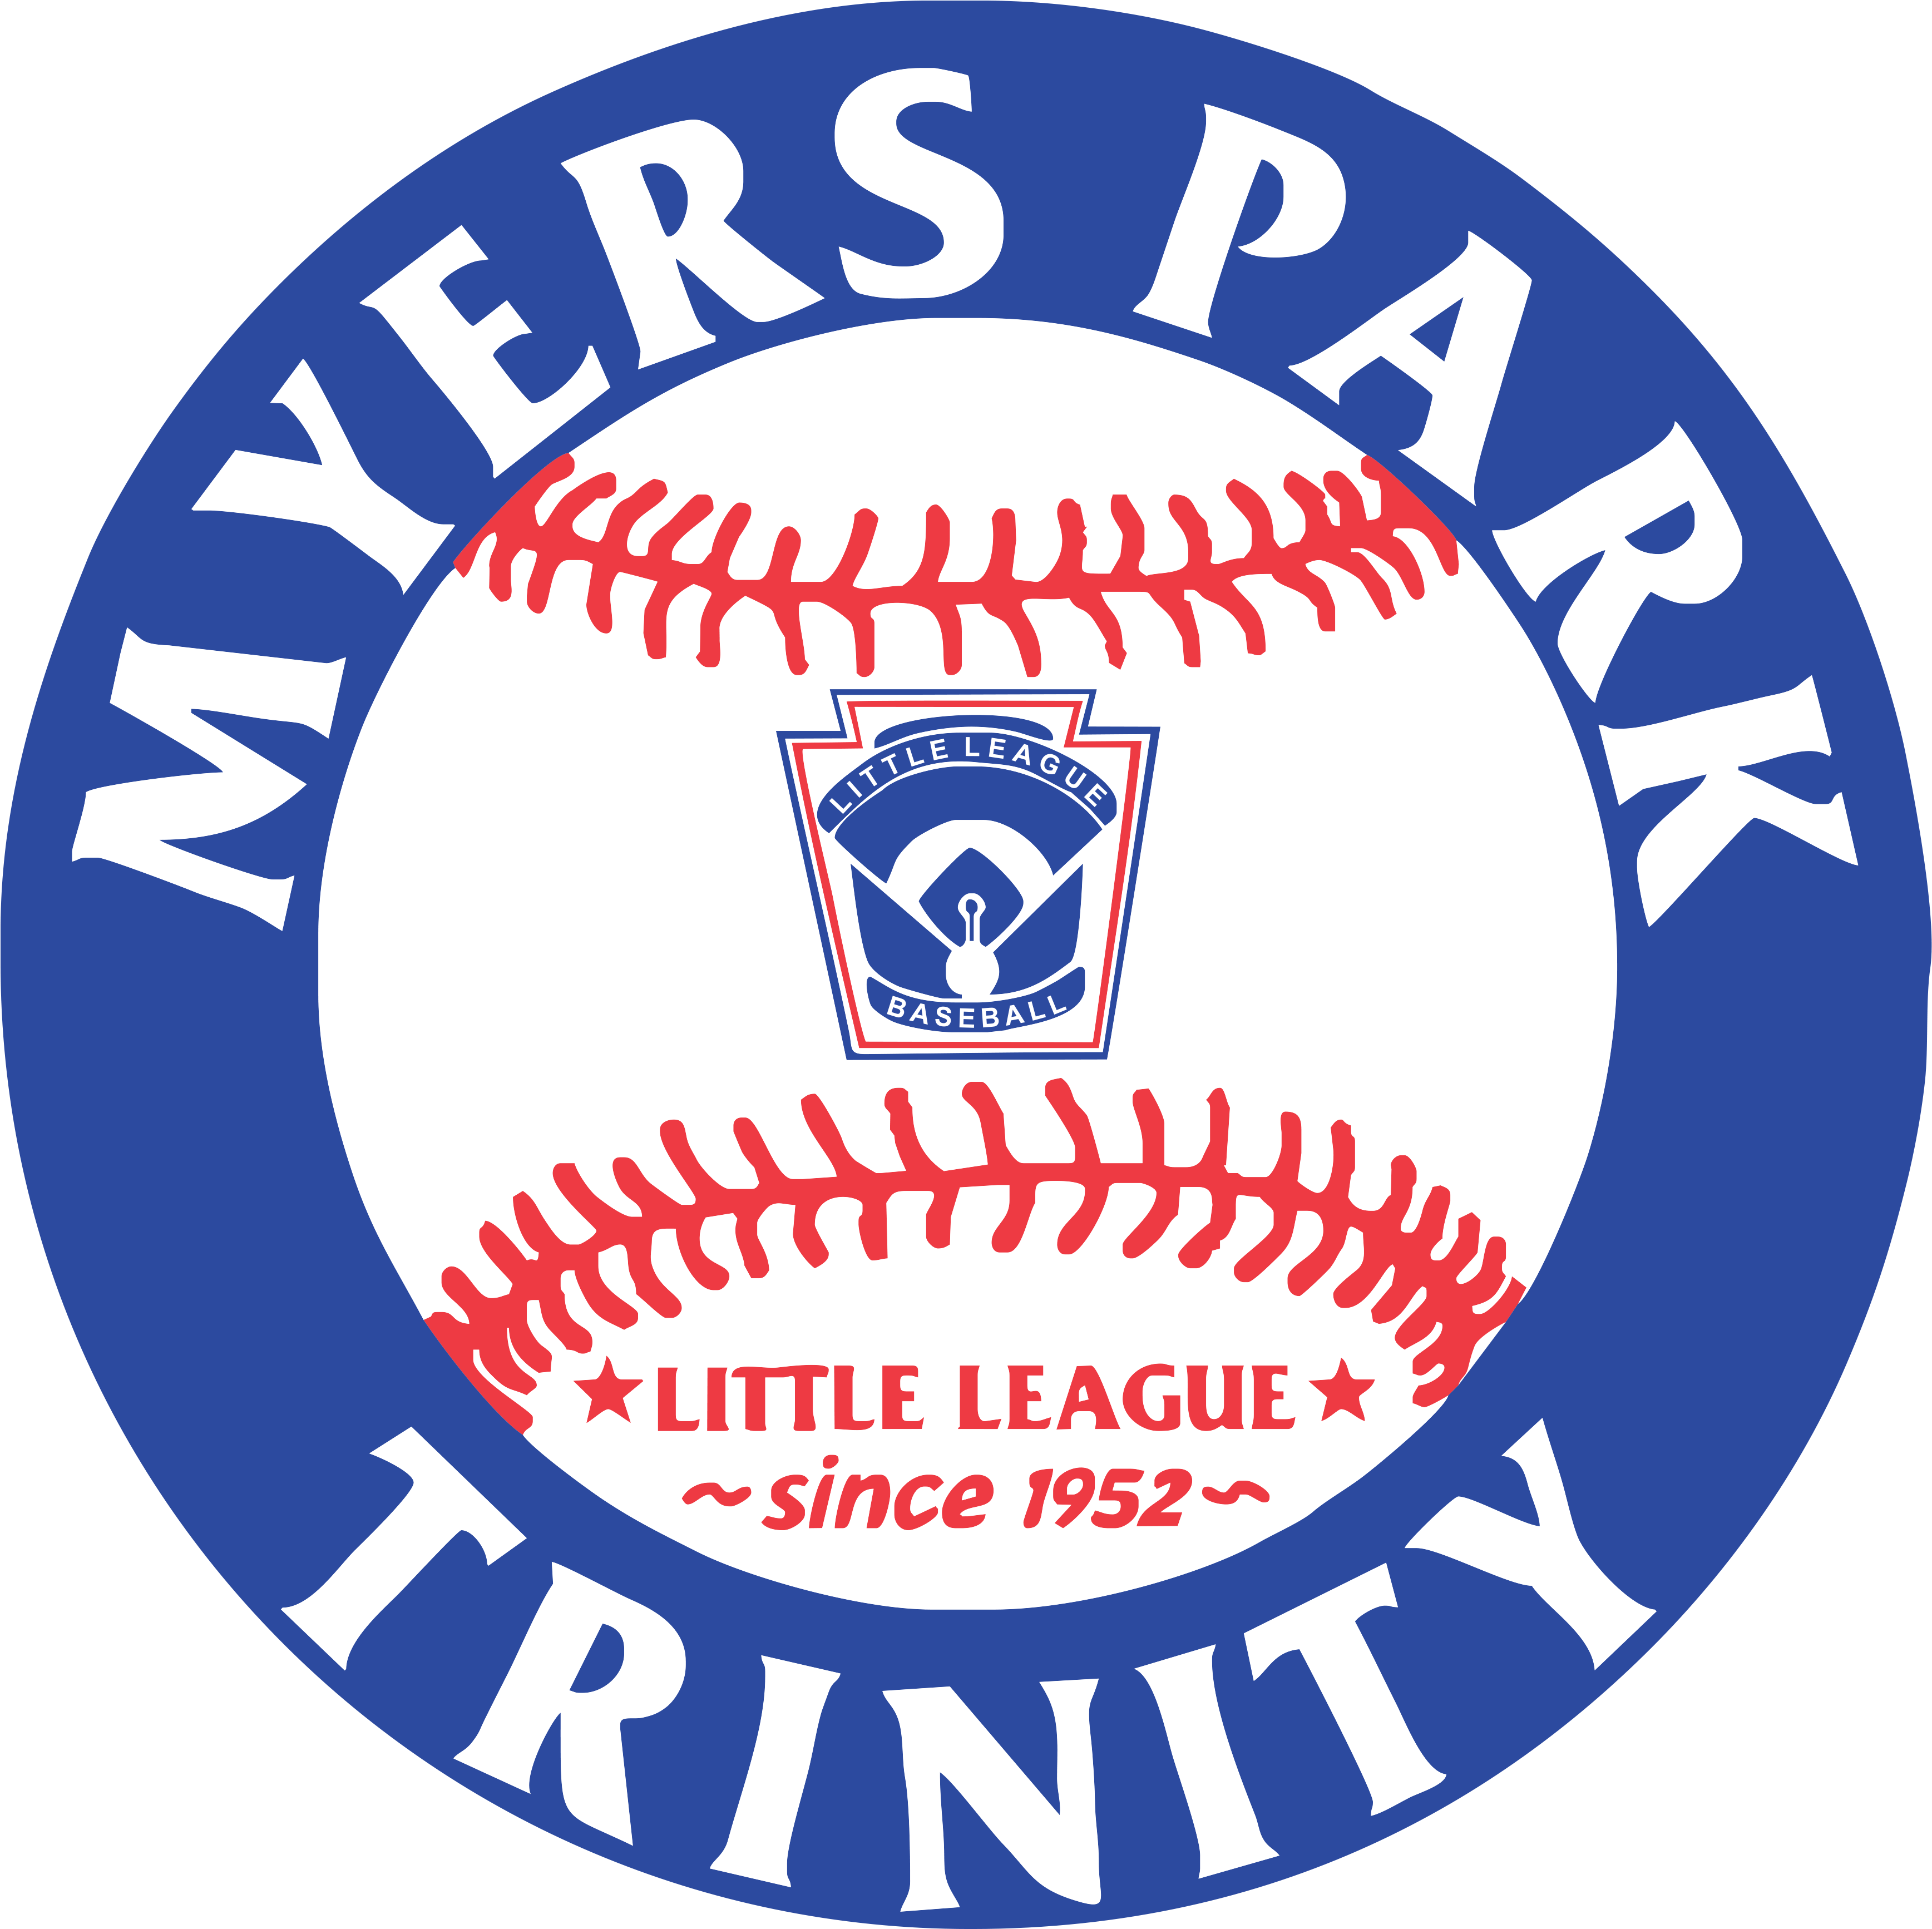 Myers Park Trinity Little League Offers Major League - Myers Park Trinity Little League (3482x3467)